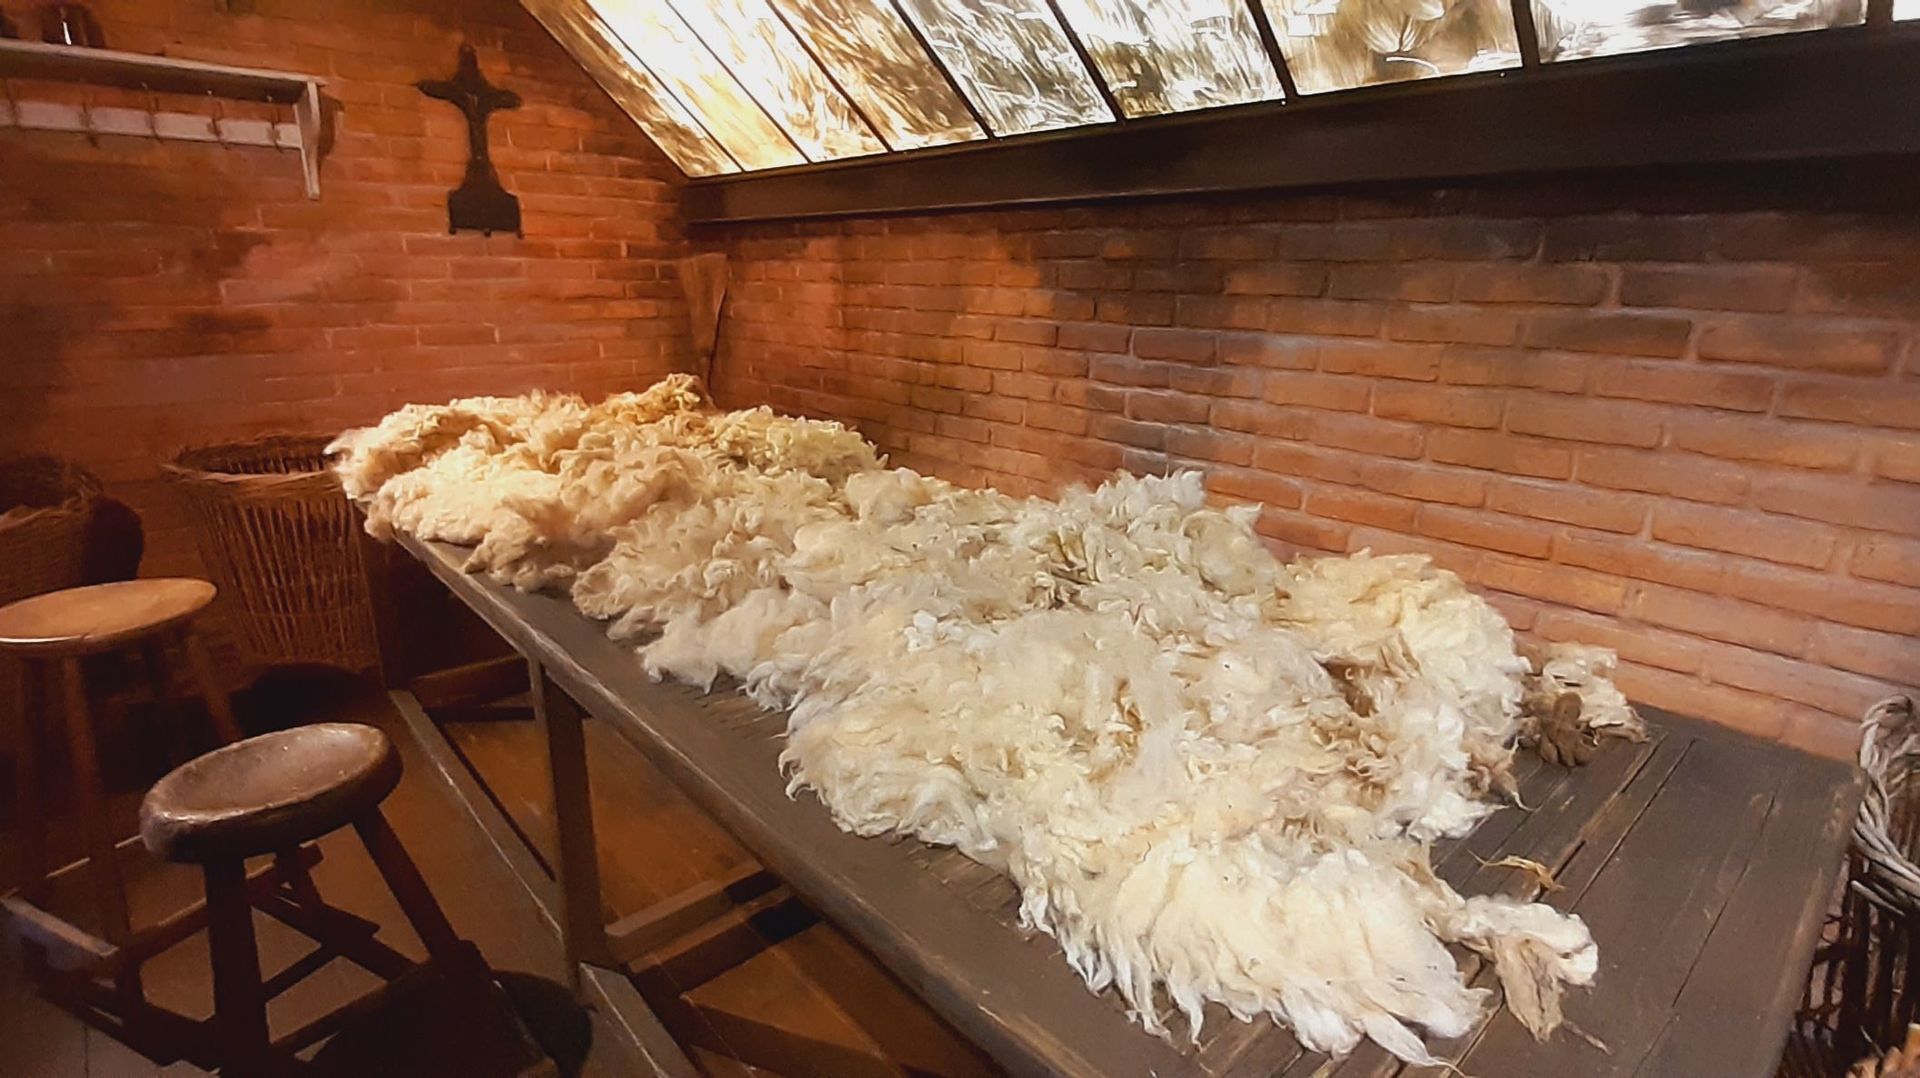 La laine et son industrie, fleuron économique de Verviers pendant plusieurs siècles, perpétuée dans le Centre Touristique Laine et Mode.